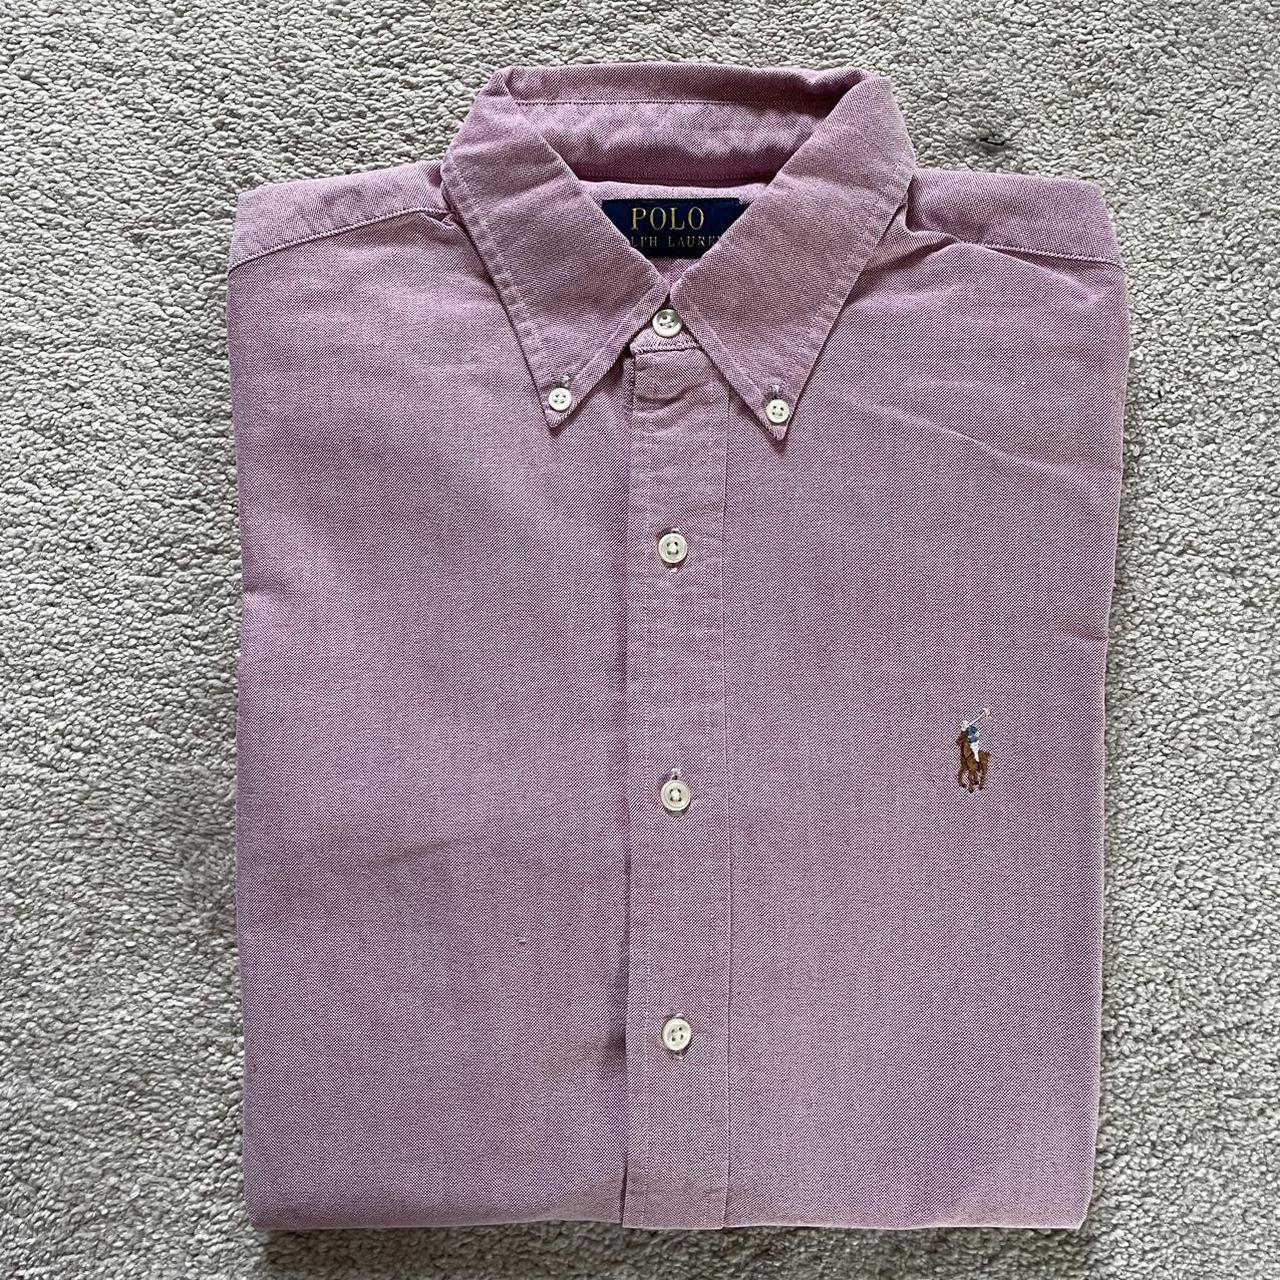 Ralph Lauren Oxford button down shirt - size small... - Depop